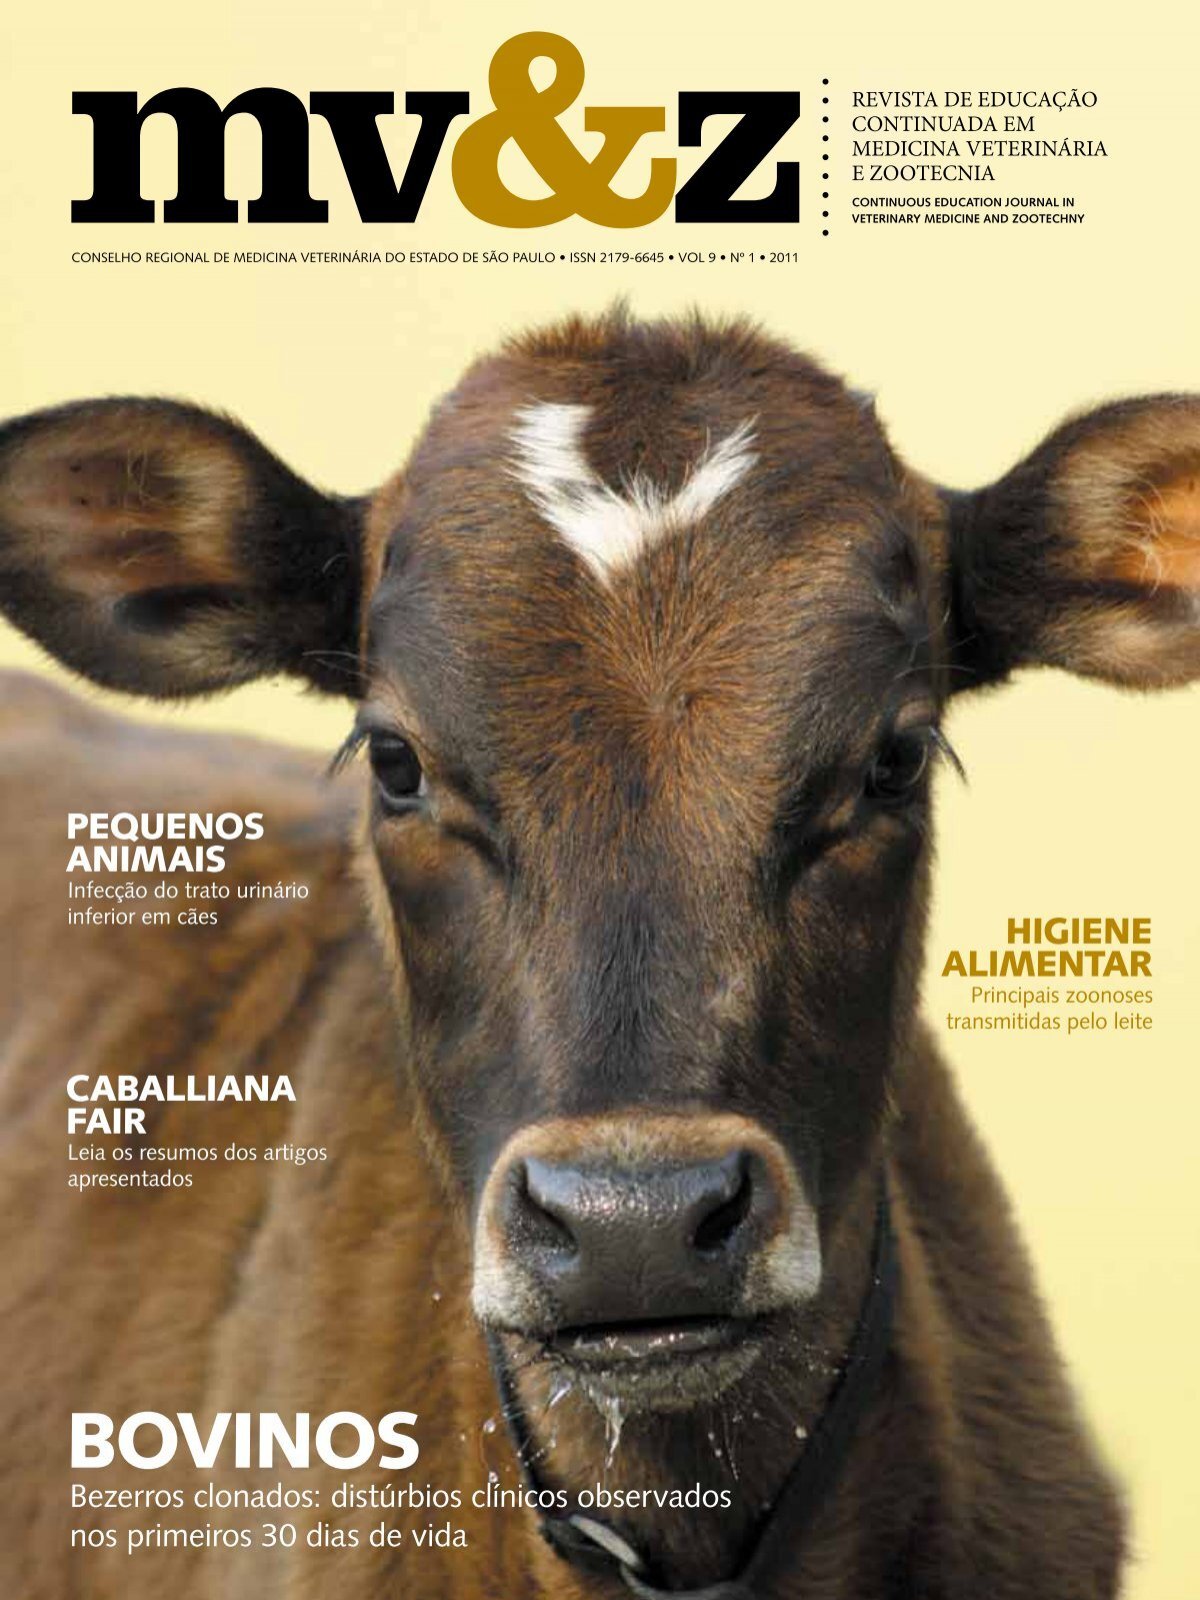 Globo Rural de outubro destaca a revolução da inseminação artificial em  tempo fixo - Revista Globo Rural